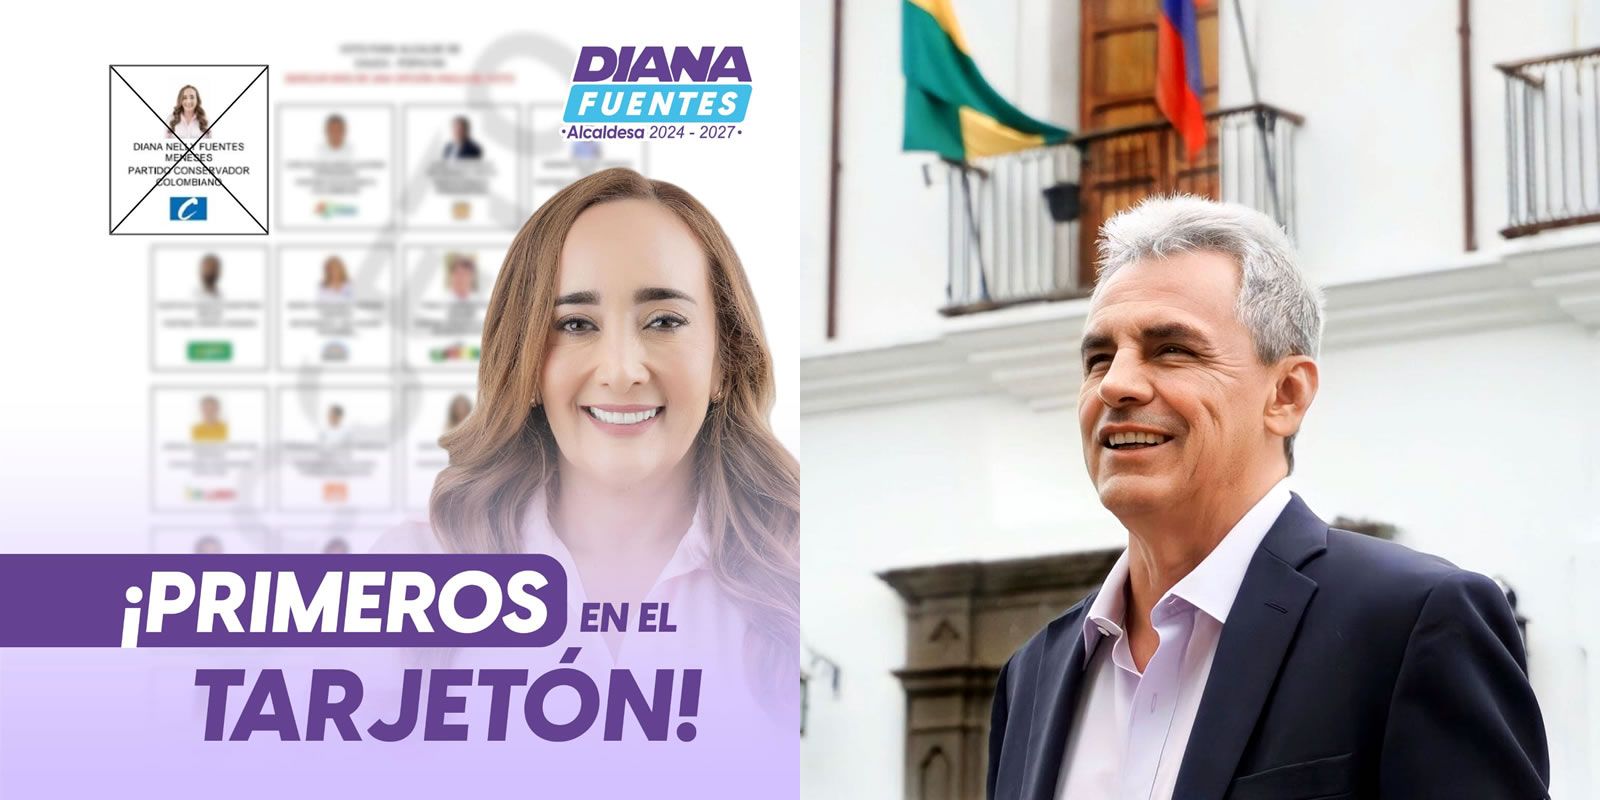 Diana Fuentes, una candidata comprometida con el progreso y la igualdad